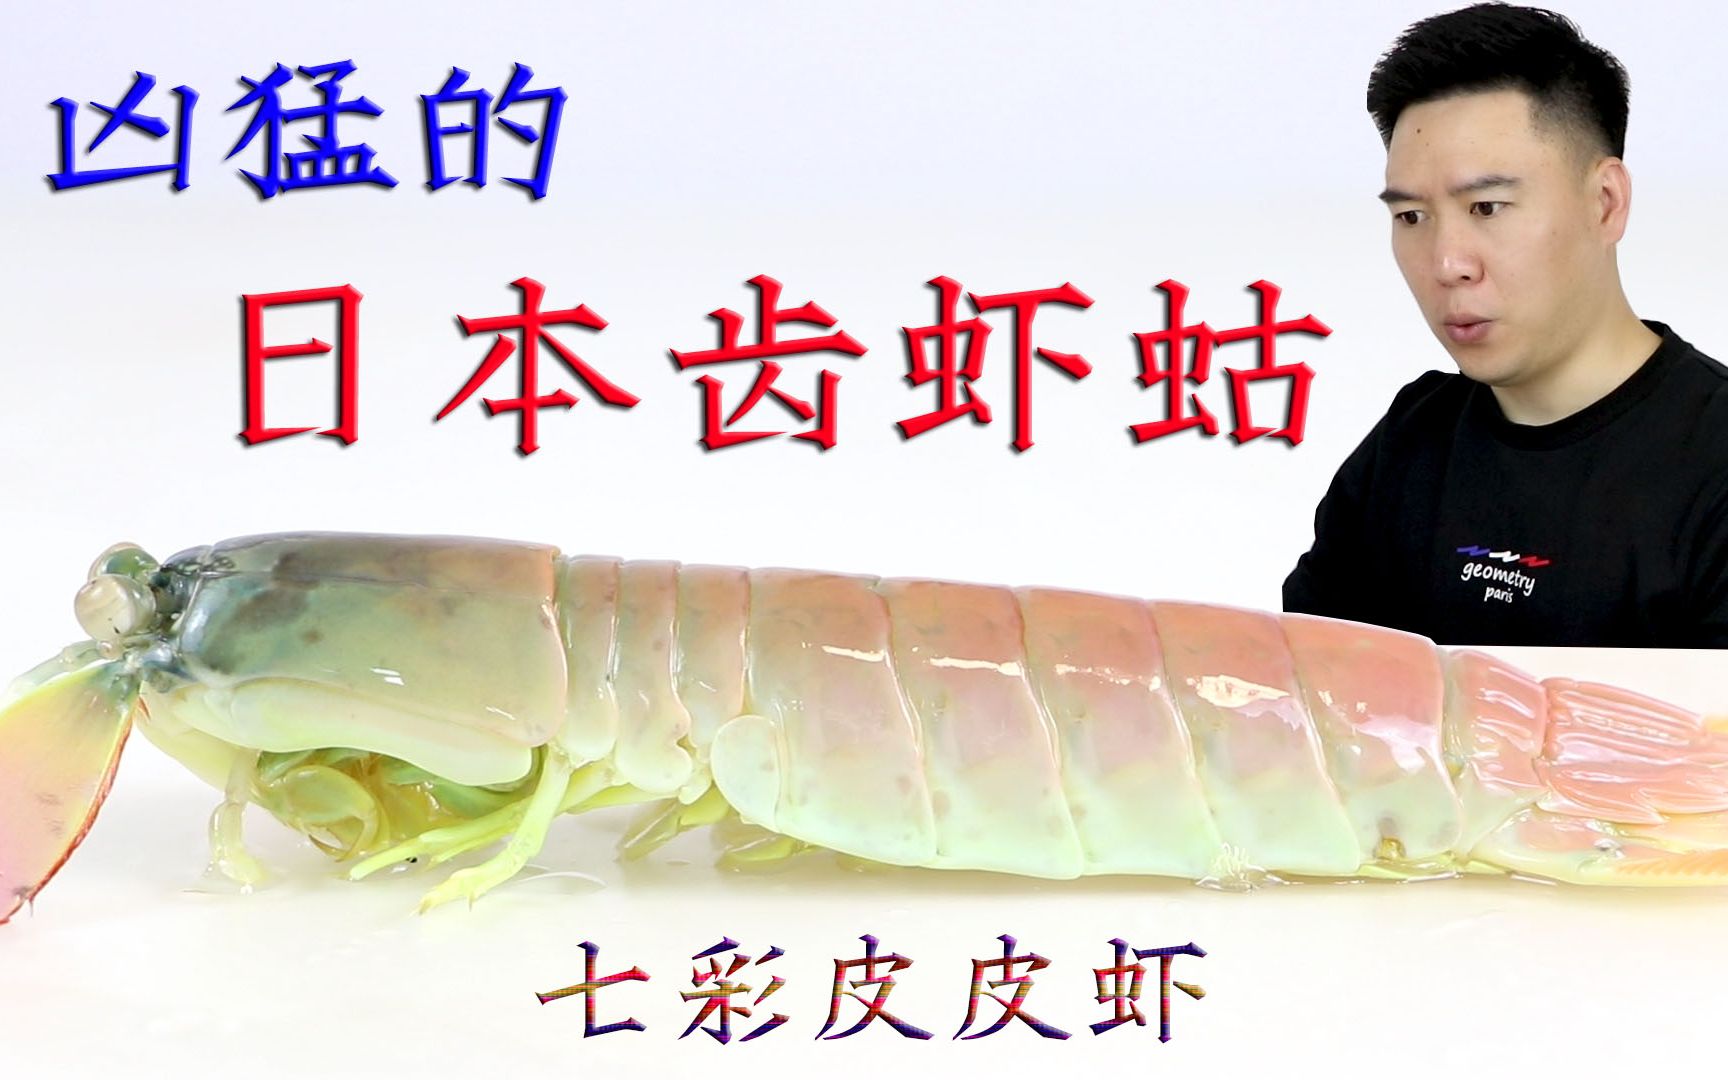 雀尾进来看看，我说的是这种螳螂虾~ - 无脊椎动物 - CMF海友论坛 - Powered by Discuz!